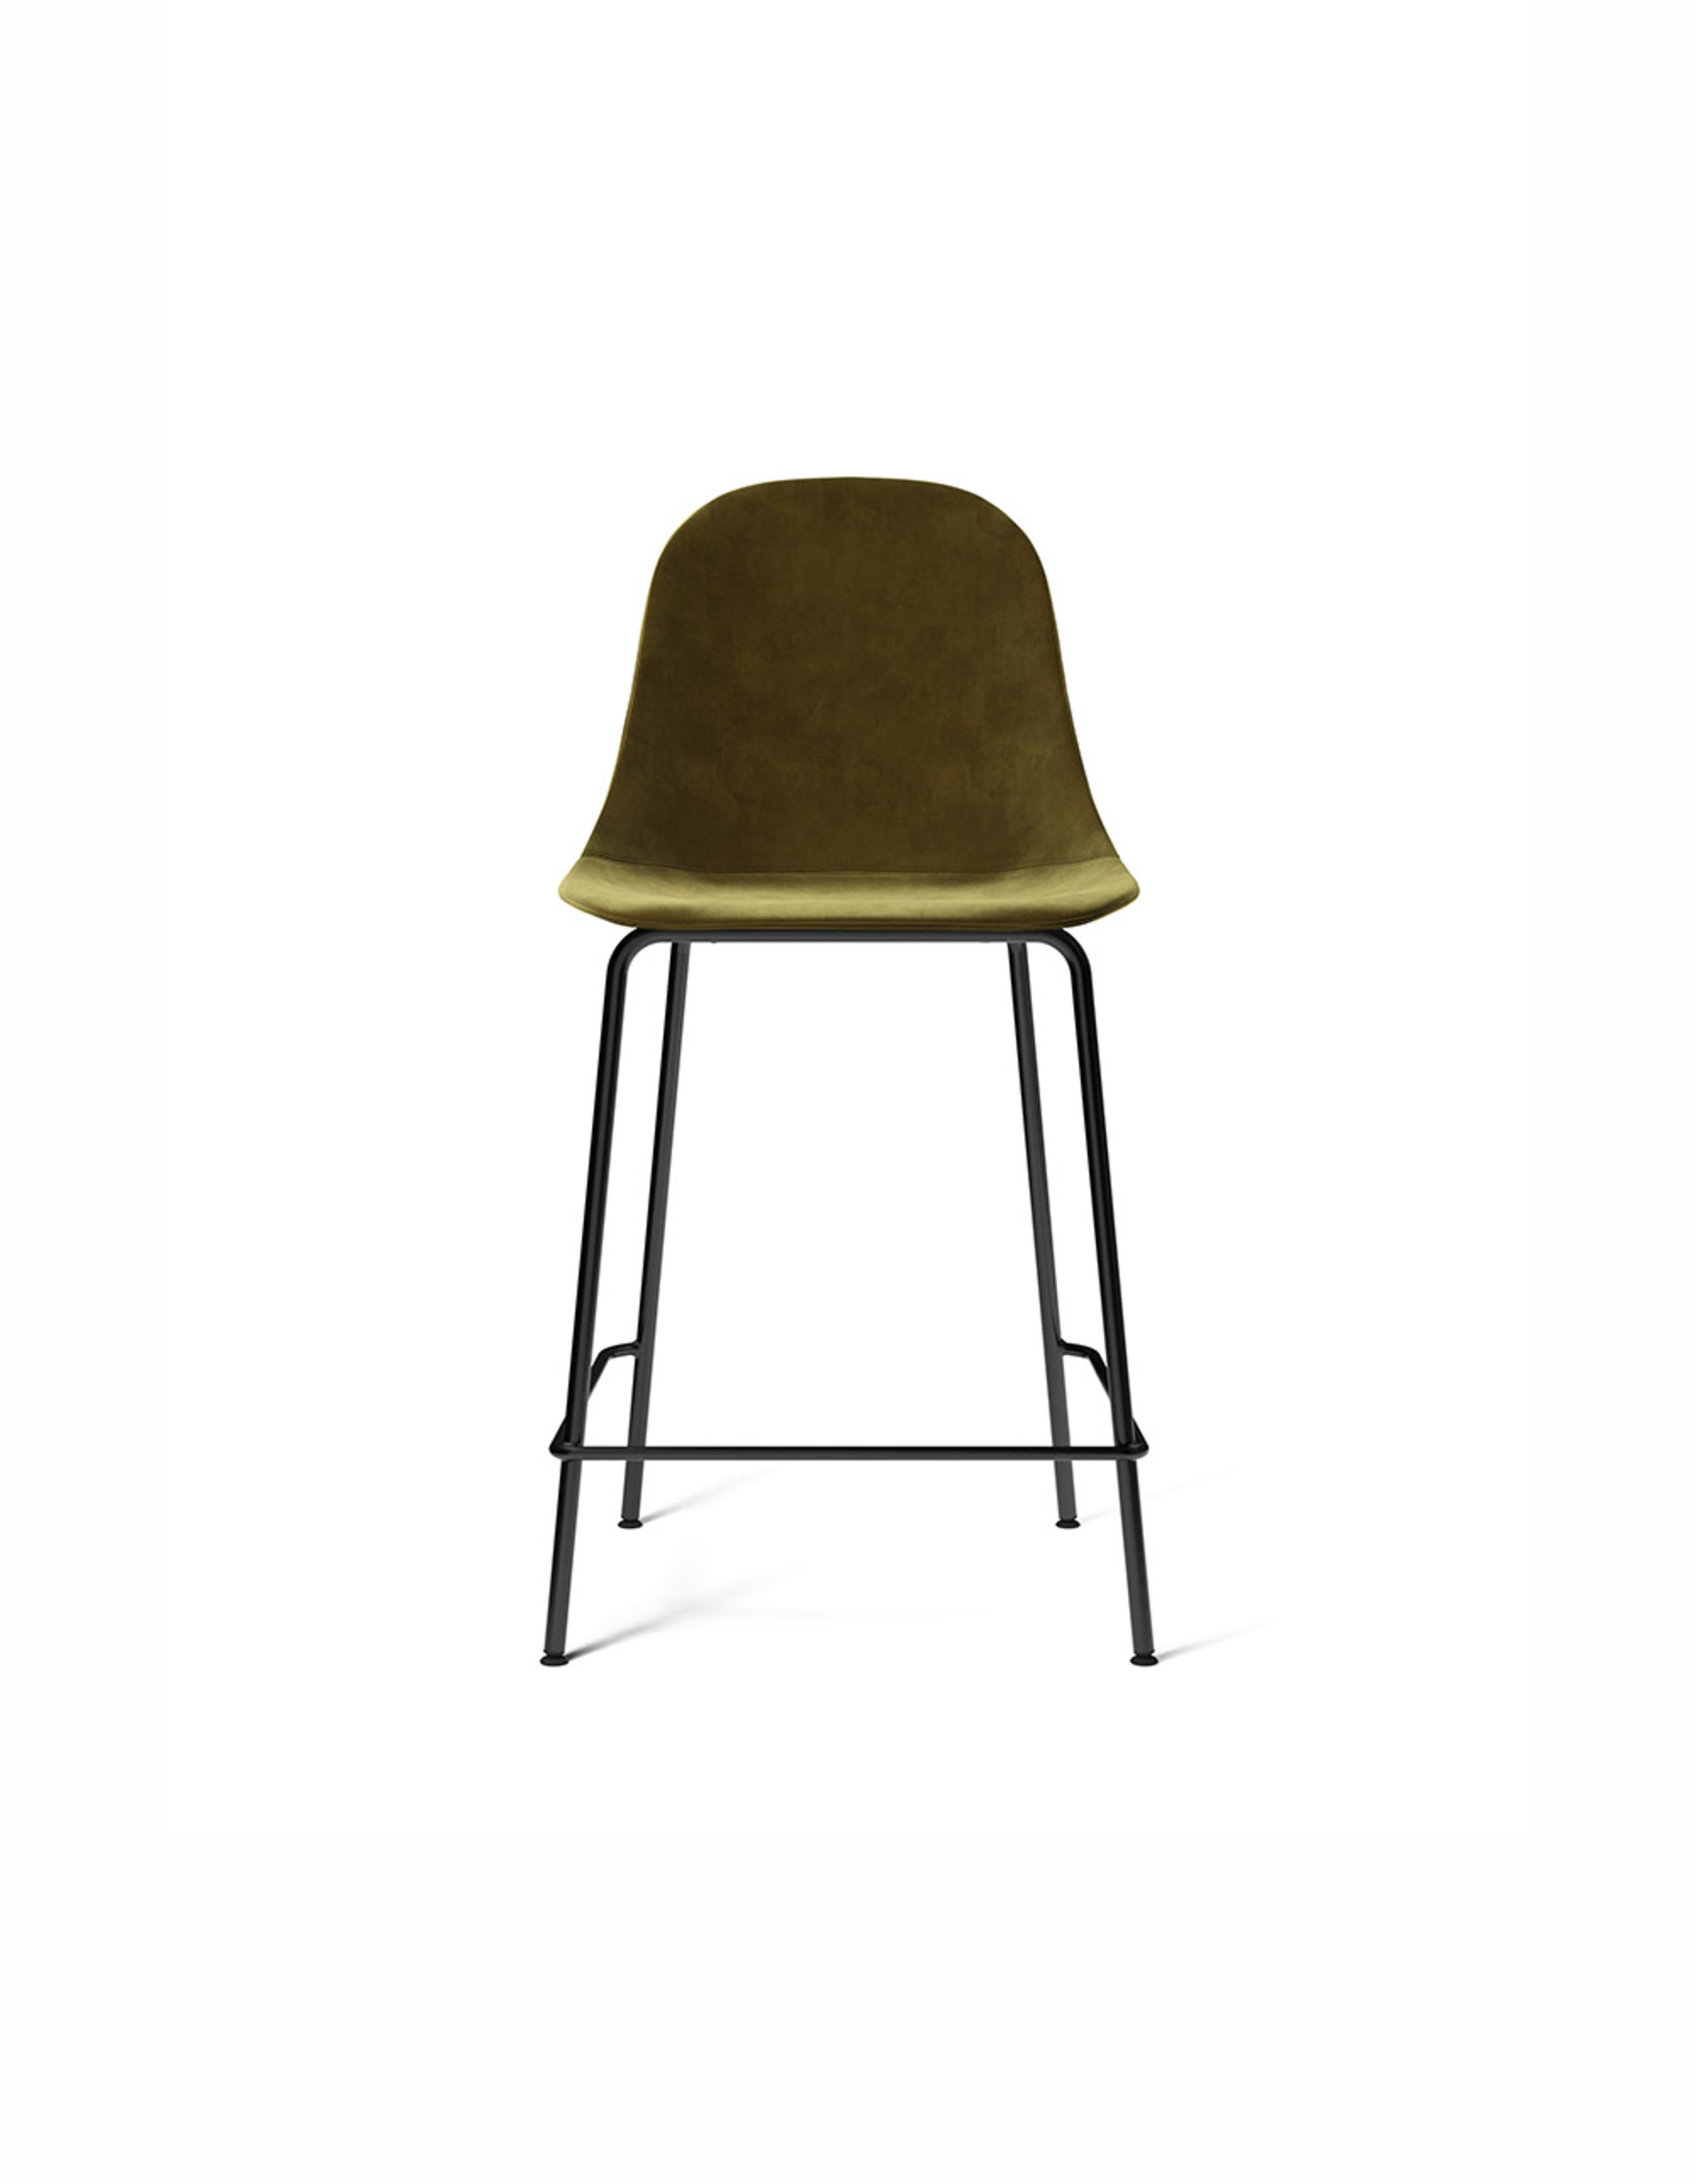 MENU - Barstol - Harbour Side Counter Chair / Black Steel Base - Upholstery: City Velvet CA 7832/031